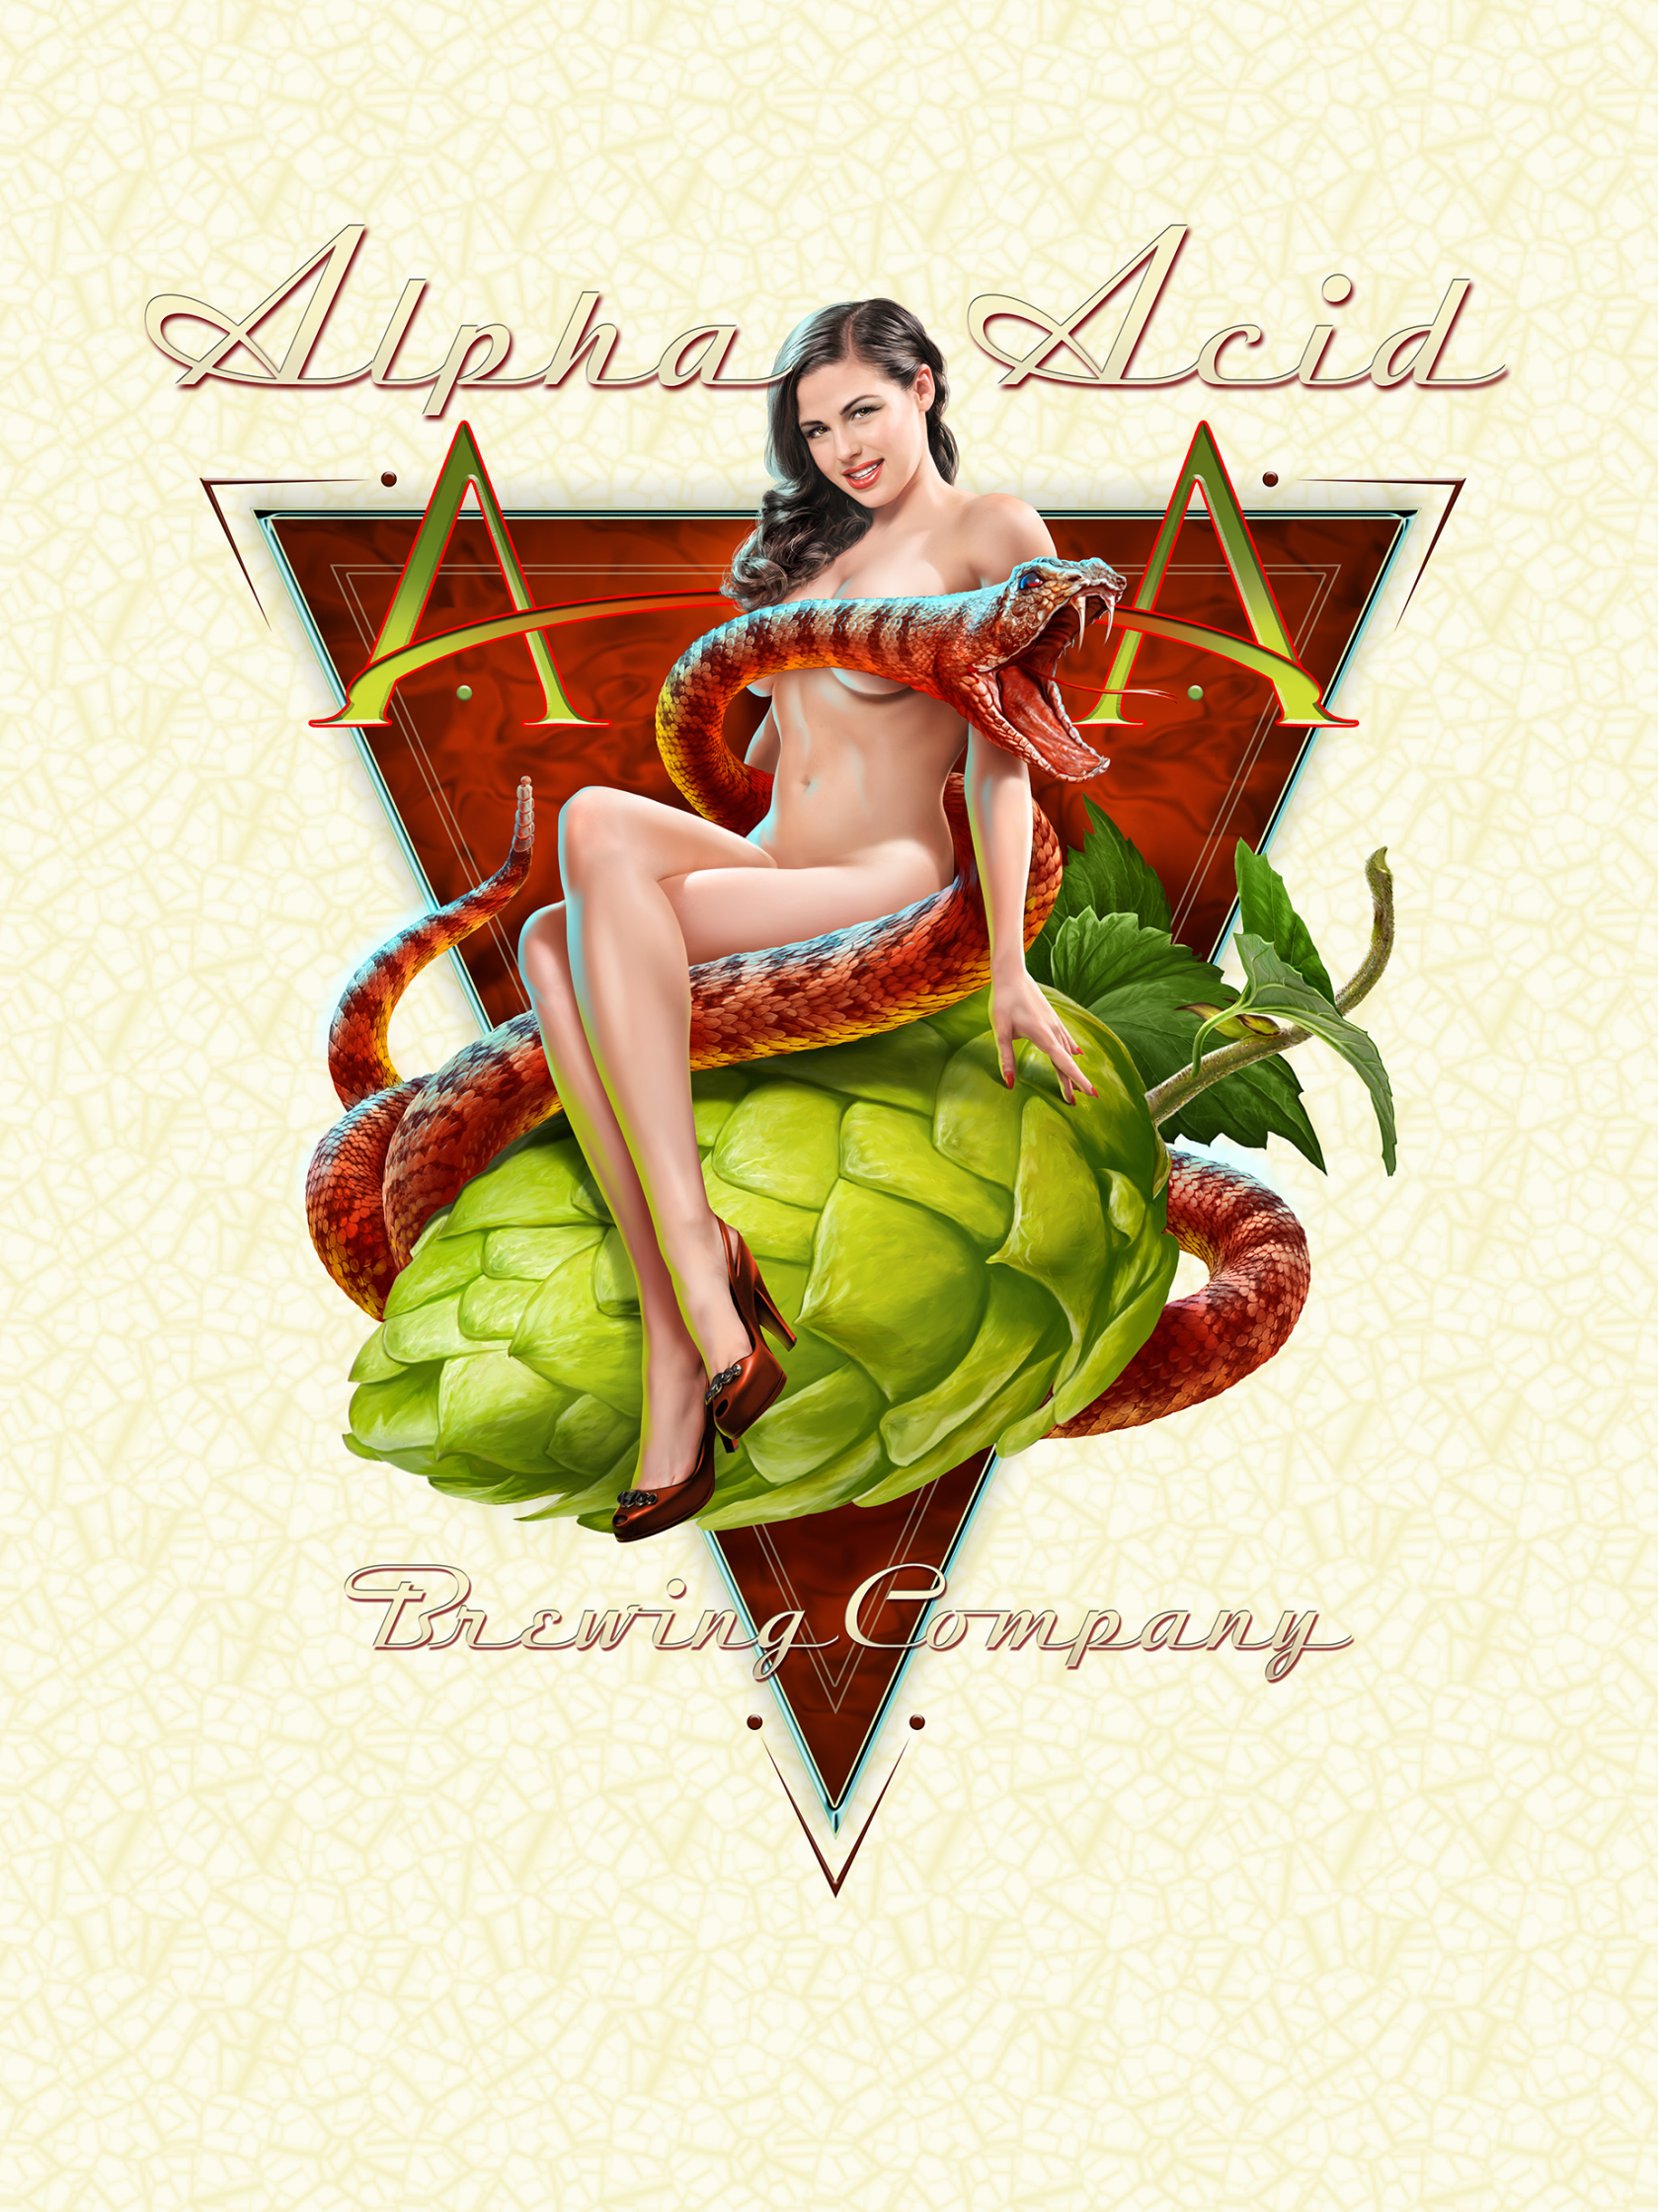 Alpha Acid / Brewing Company